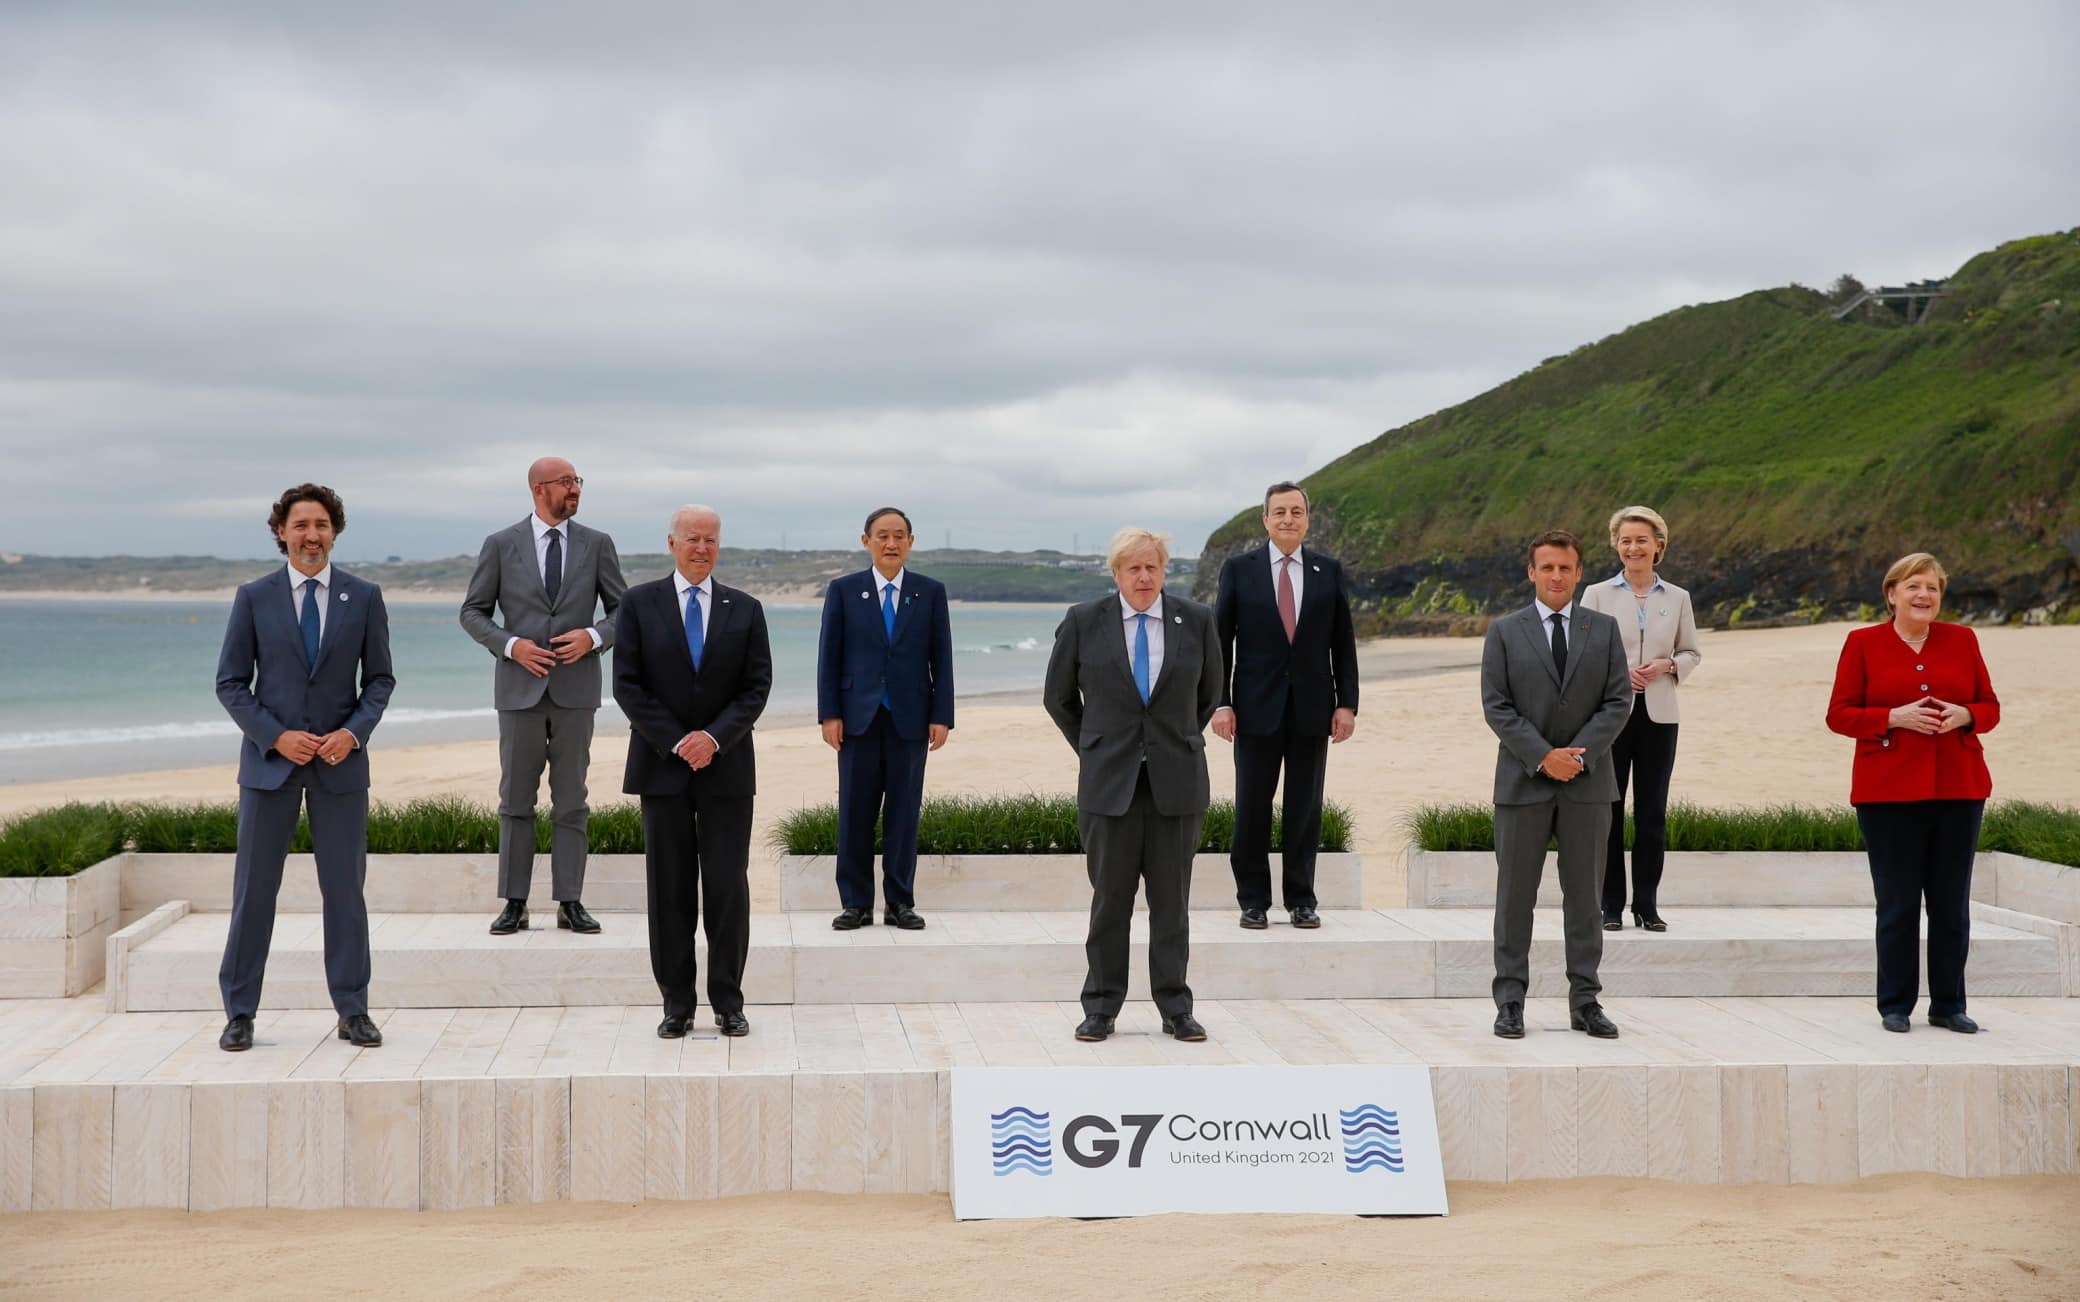 La foto dei leader al G7 in Cornovaglia